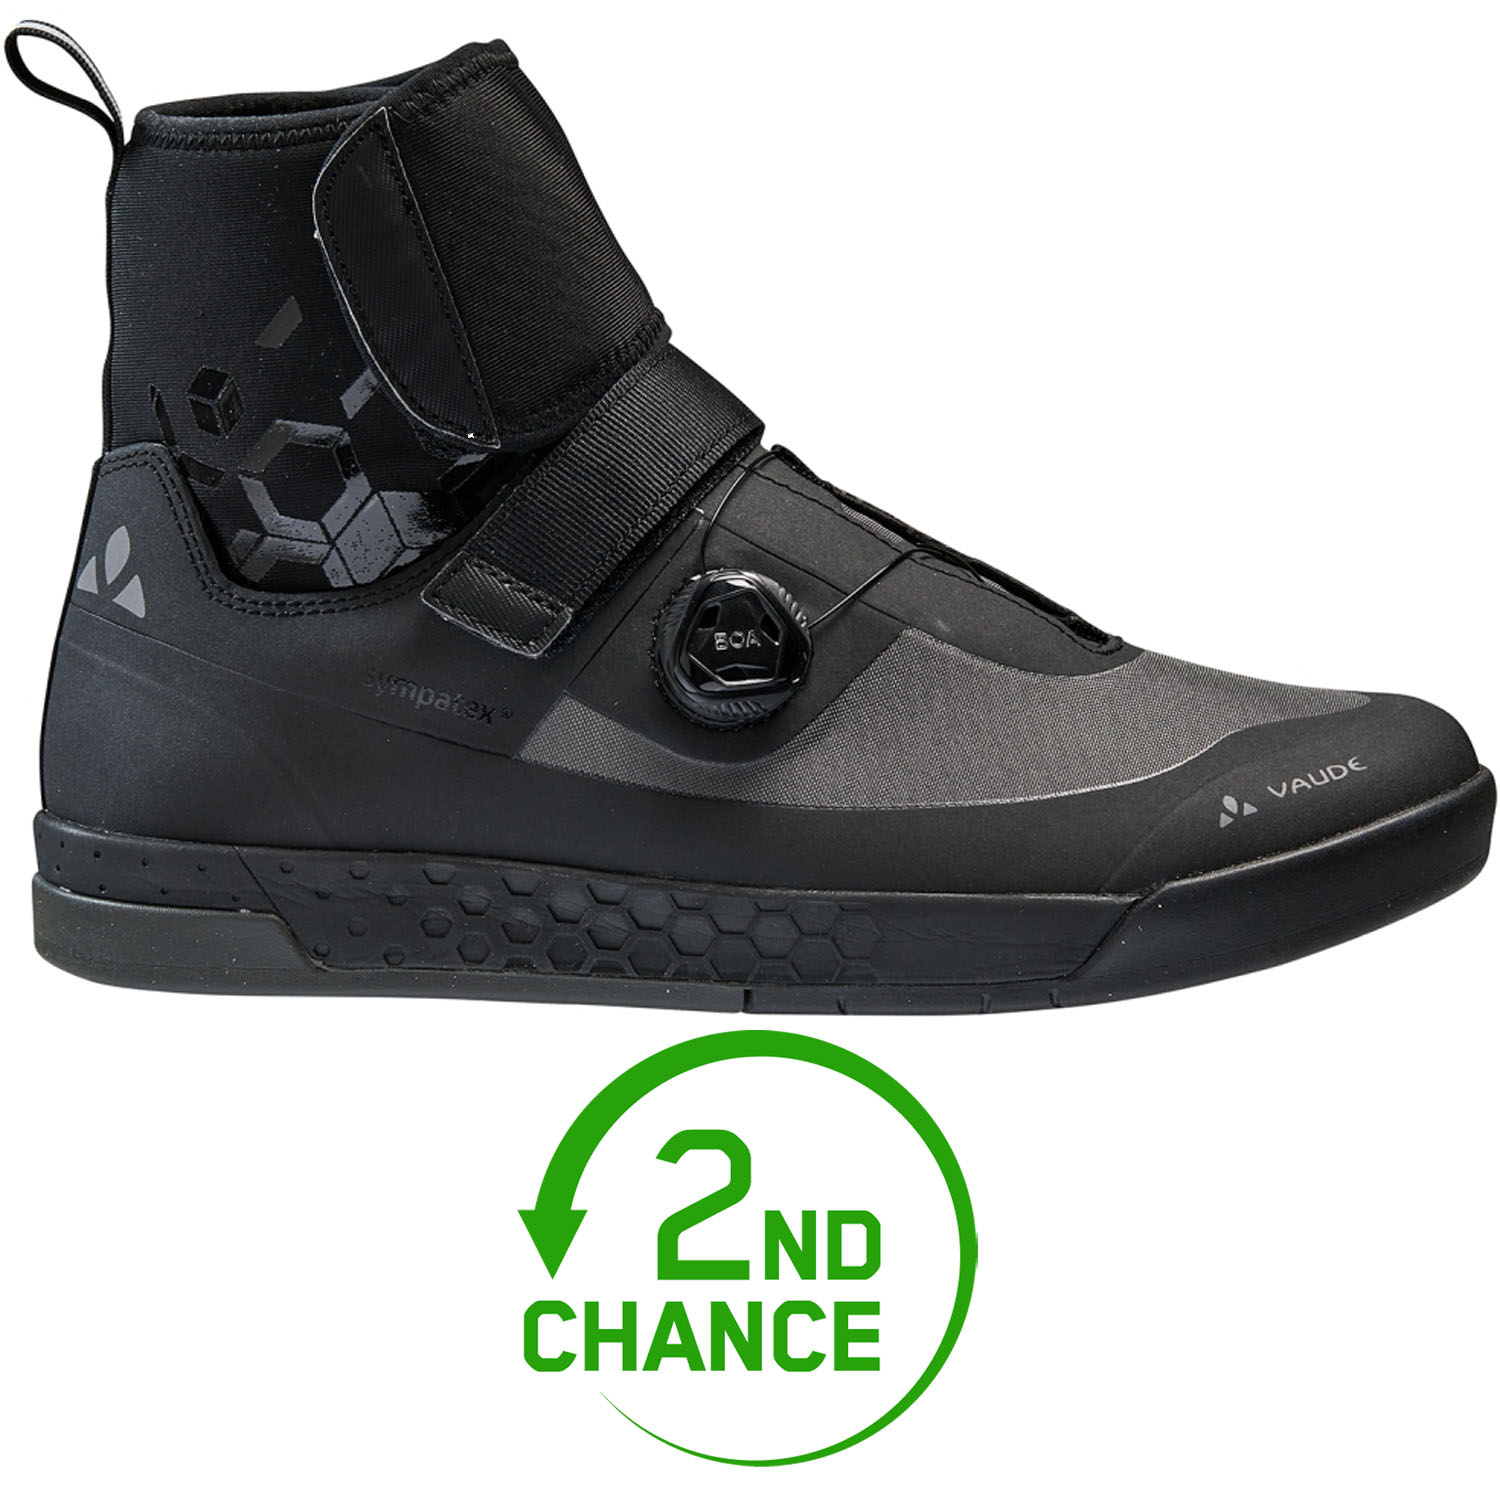 Produktbild von Vaude AM Moab Mid Winter STX Schuhe Herren - schwarz - B-Ware